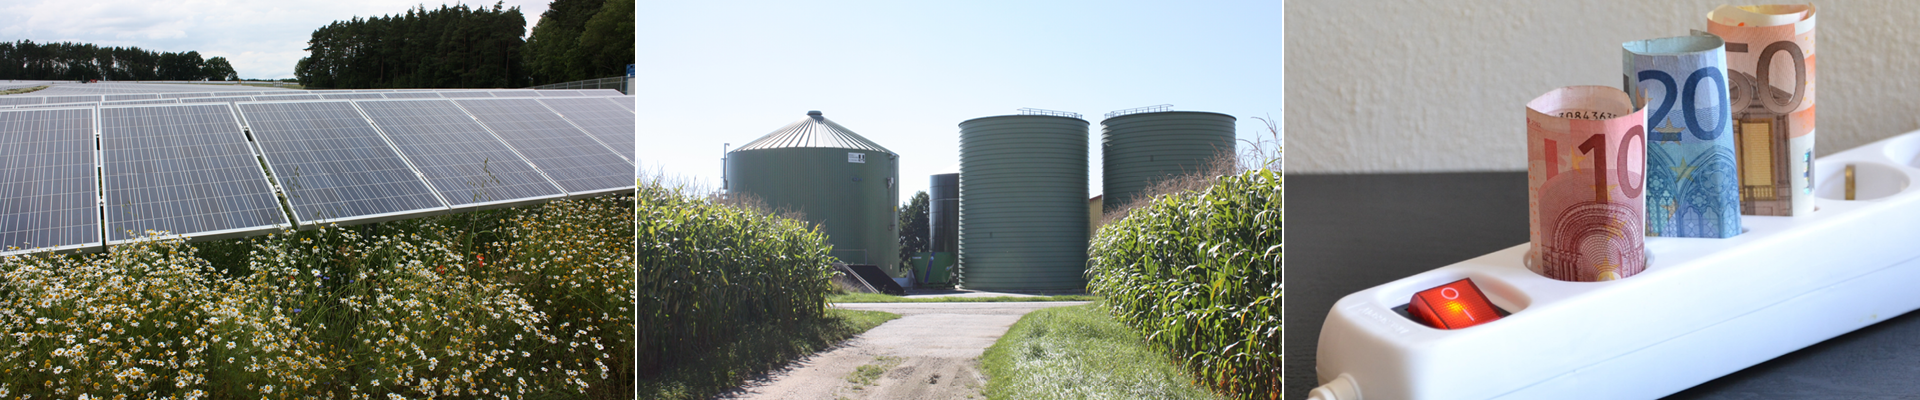 14. Biogastagung: Mit Biogas durch die Energiekrise